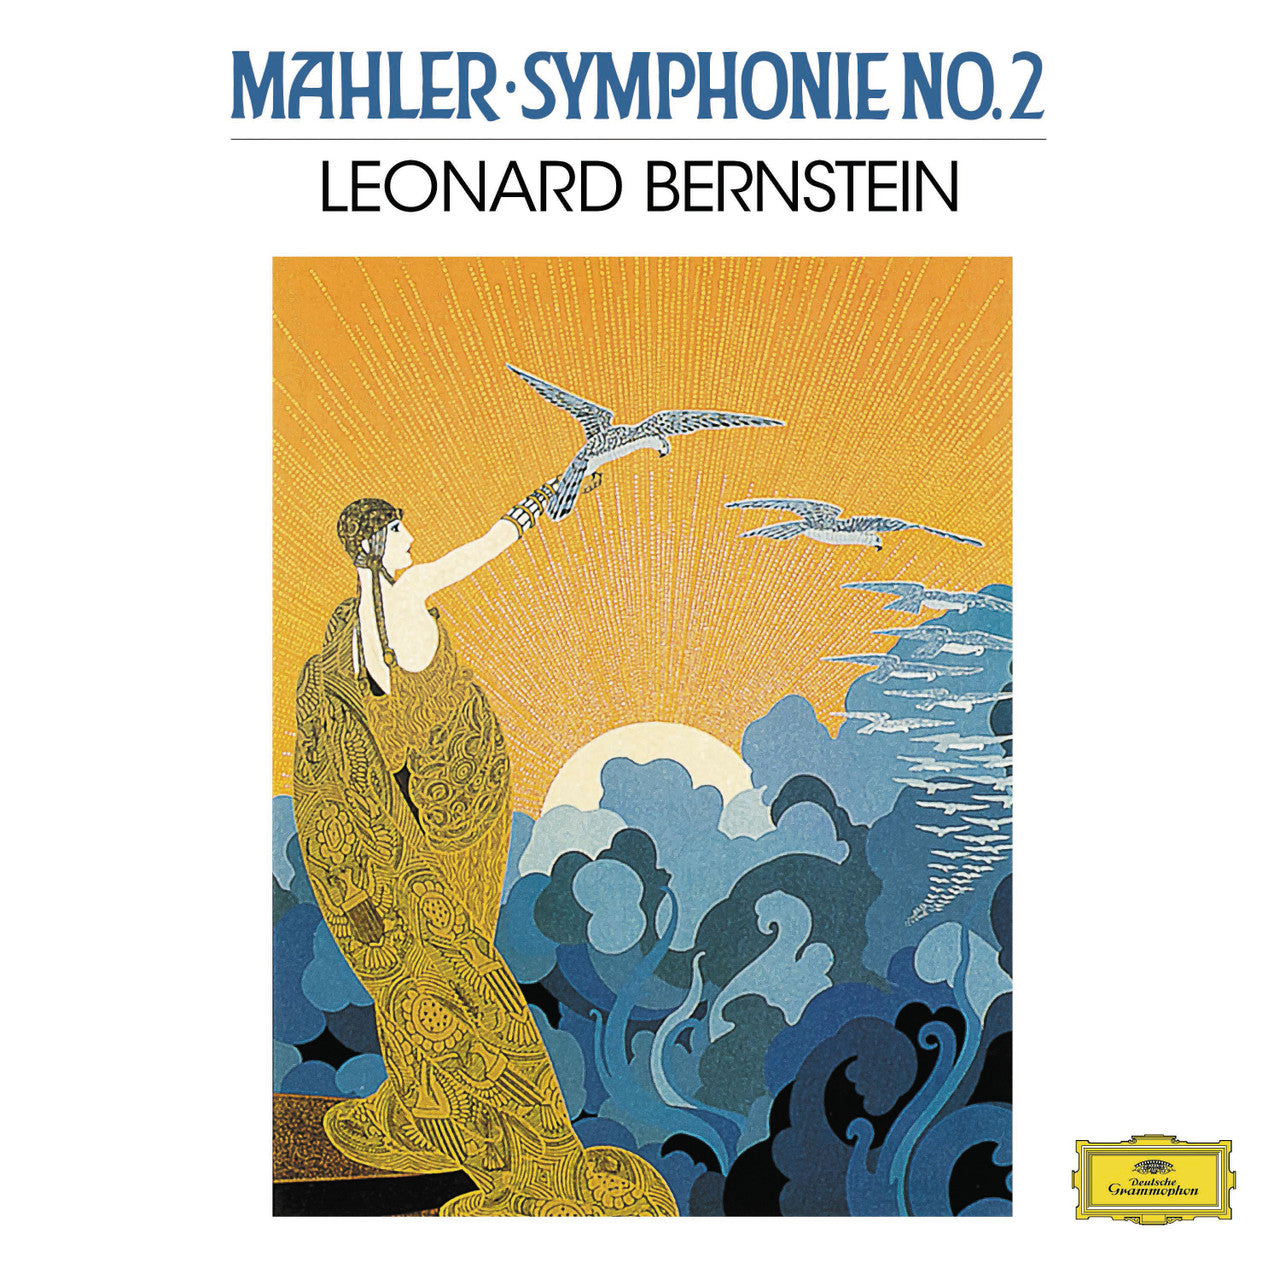 [DAMAGED] Leonard Bernstein - Leonard Bernstein Mahler: Symponie No. 2